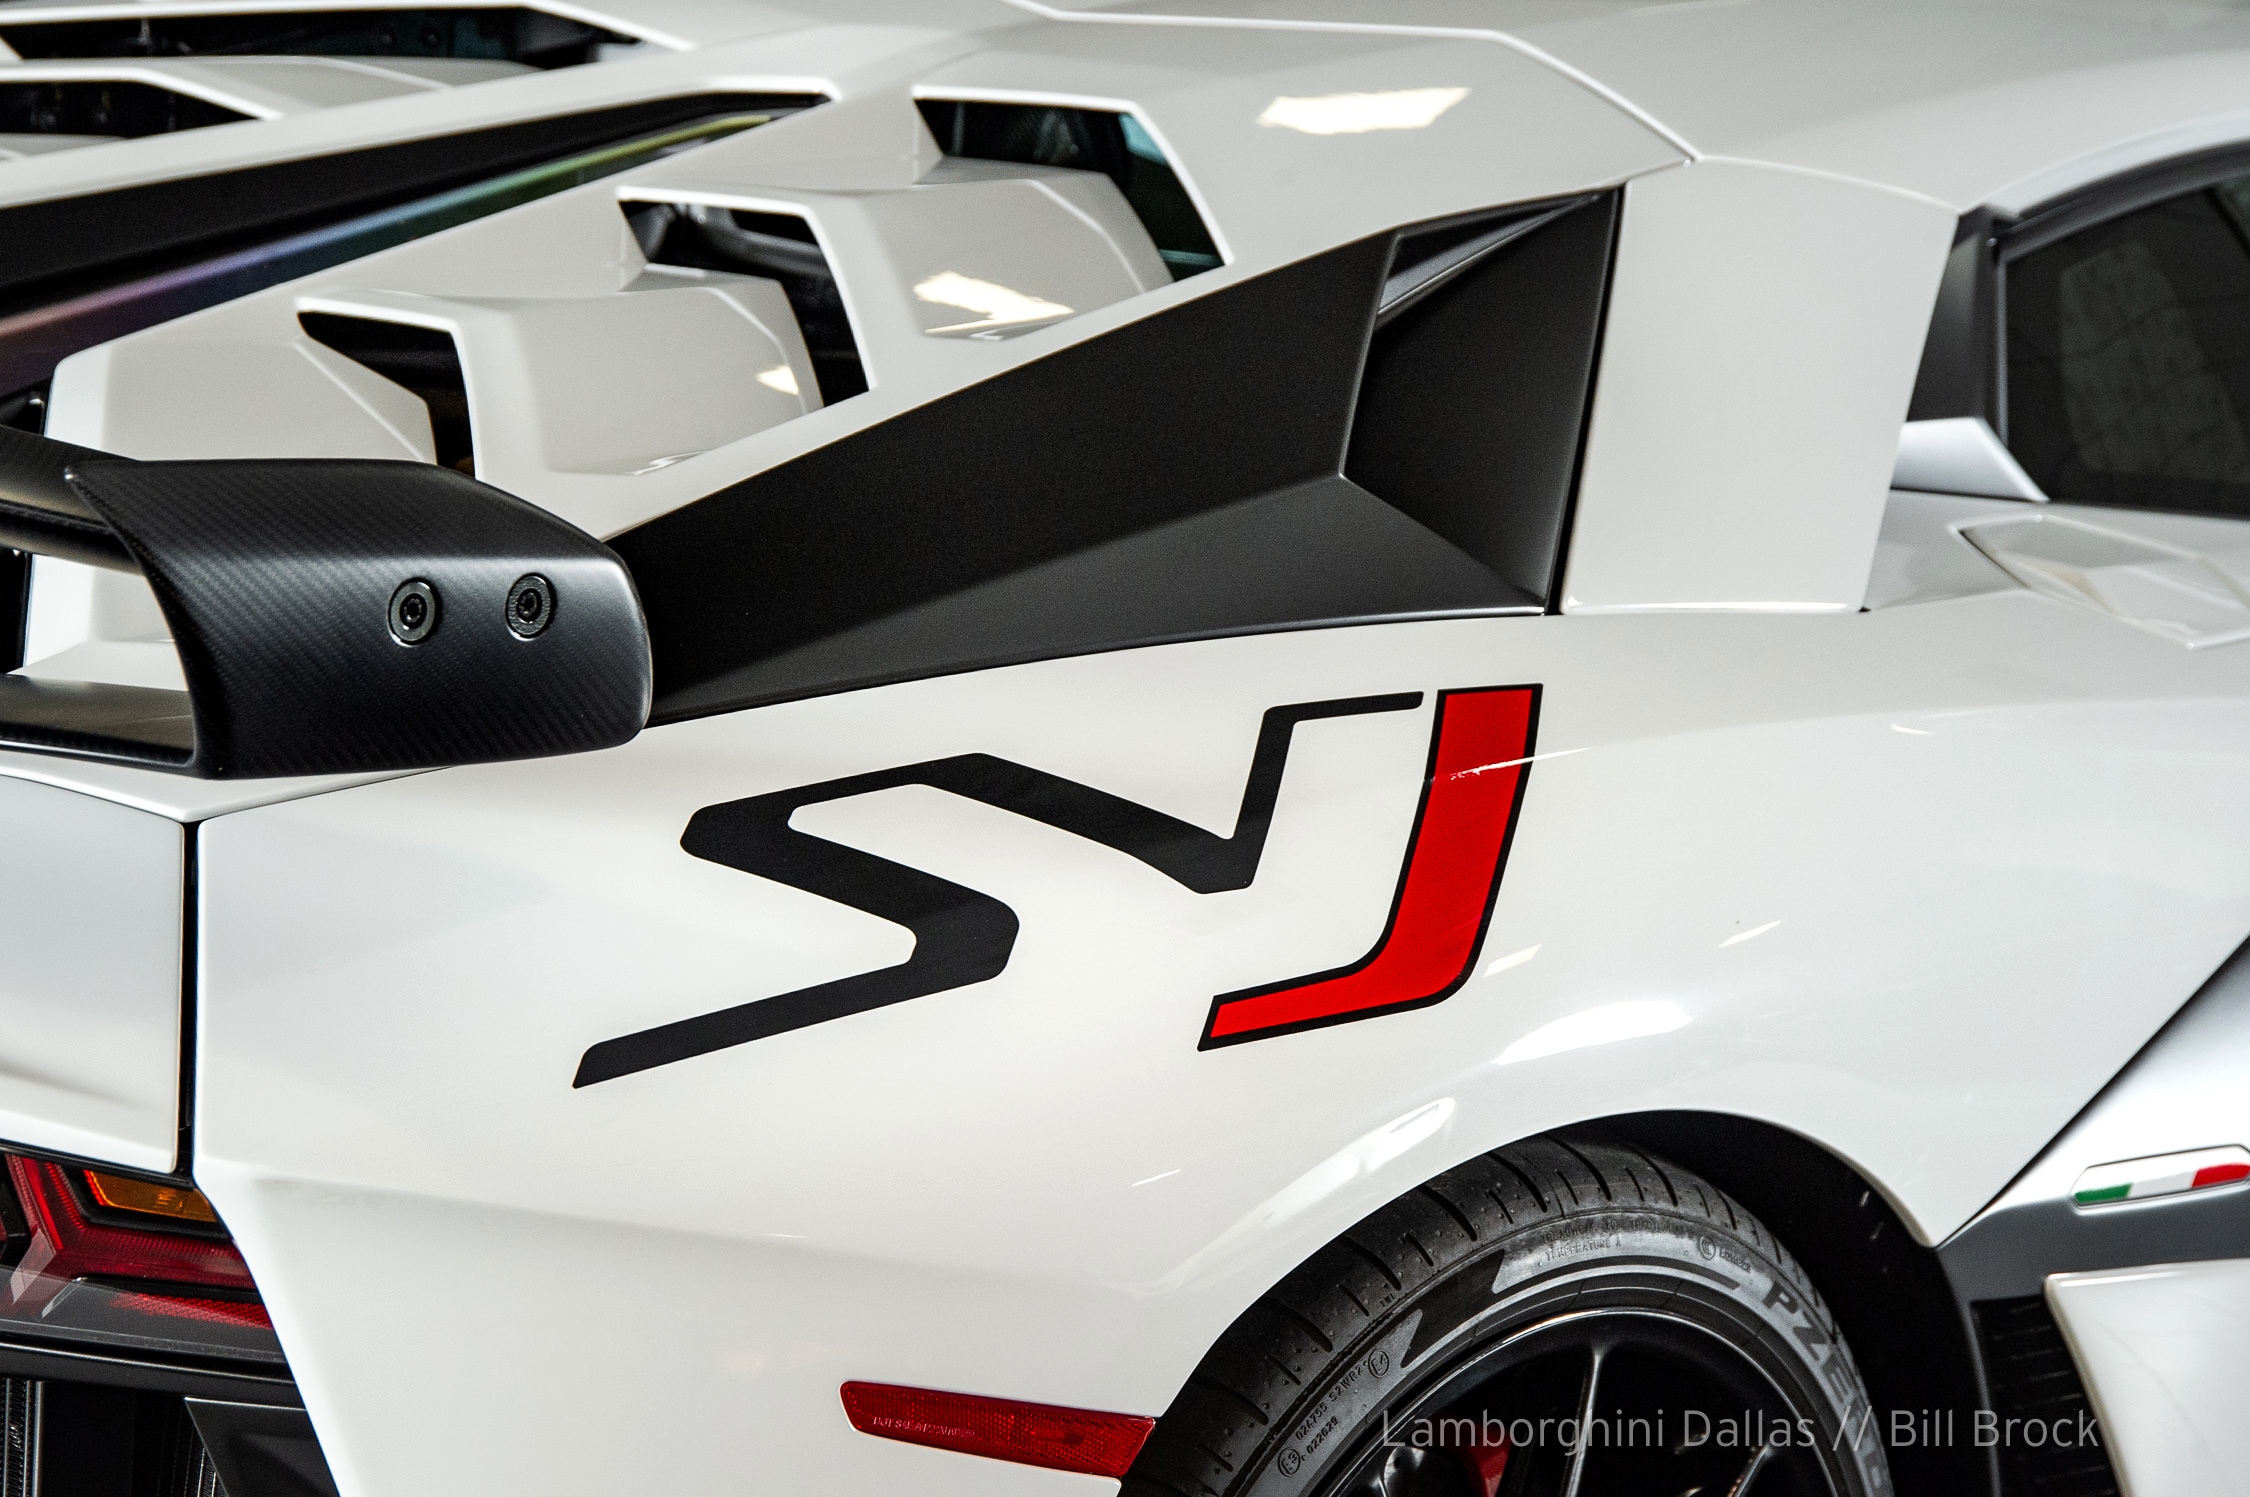 Used 2019 Lamborghini Aventador SVJ For Sale at LAMBORGHINI DALLAS 